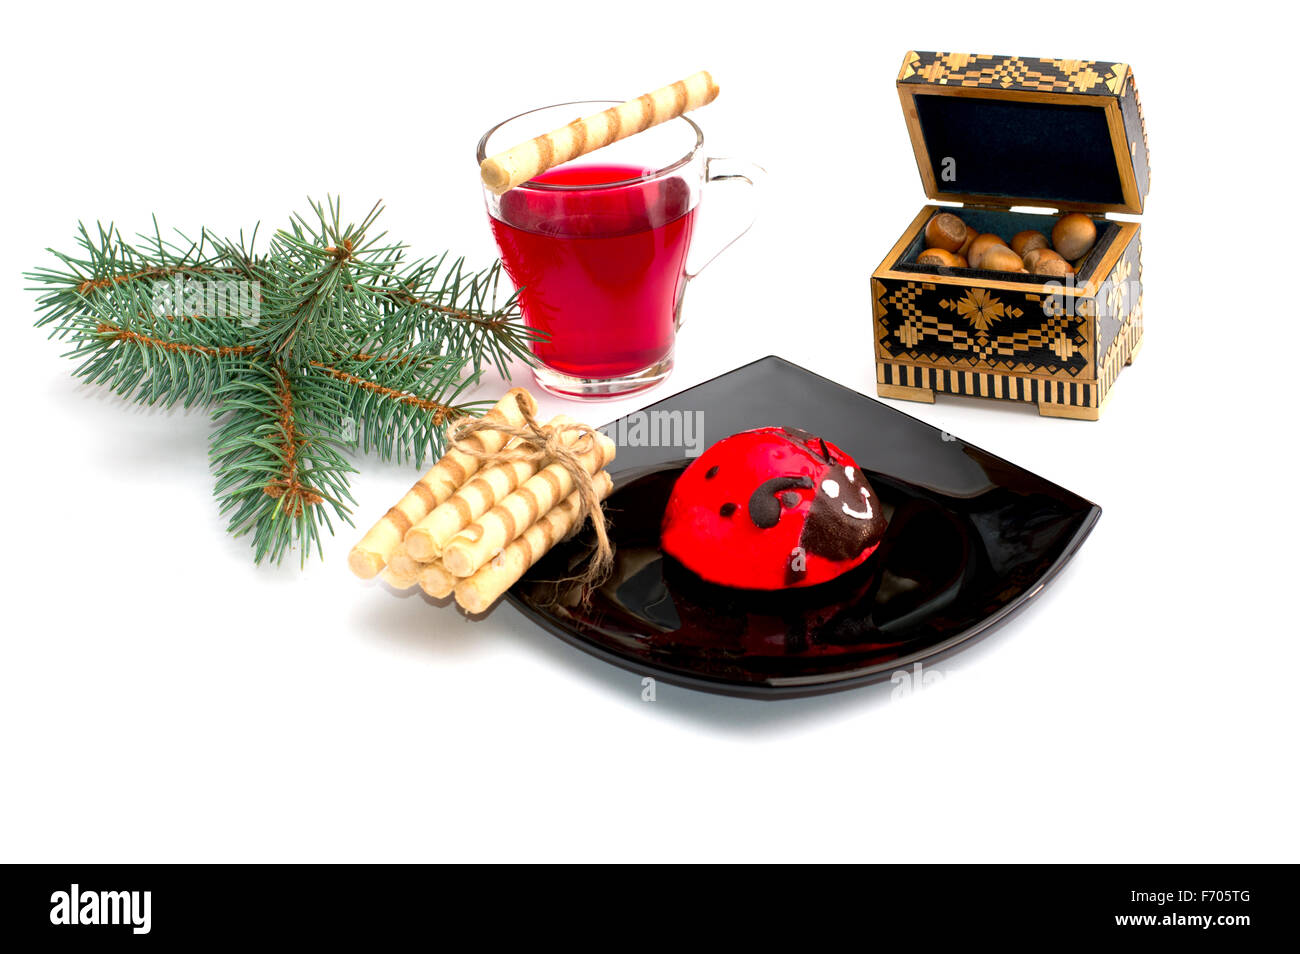 Plaque avec gâteau rouge, thé, et une direction générale des nucules de conifères, une nature morte, l'objet Noël et Nouvel An Banque D'Images